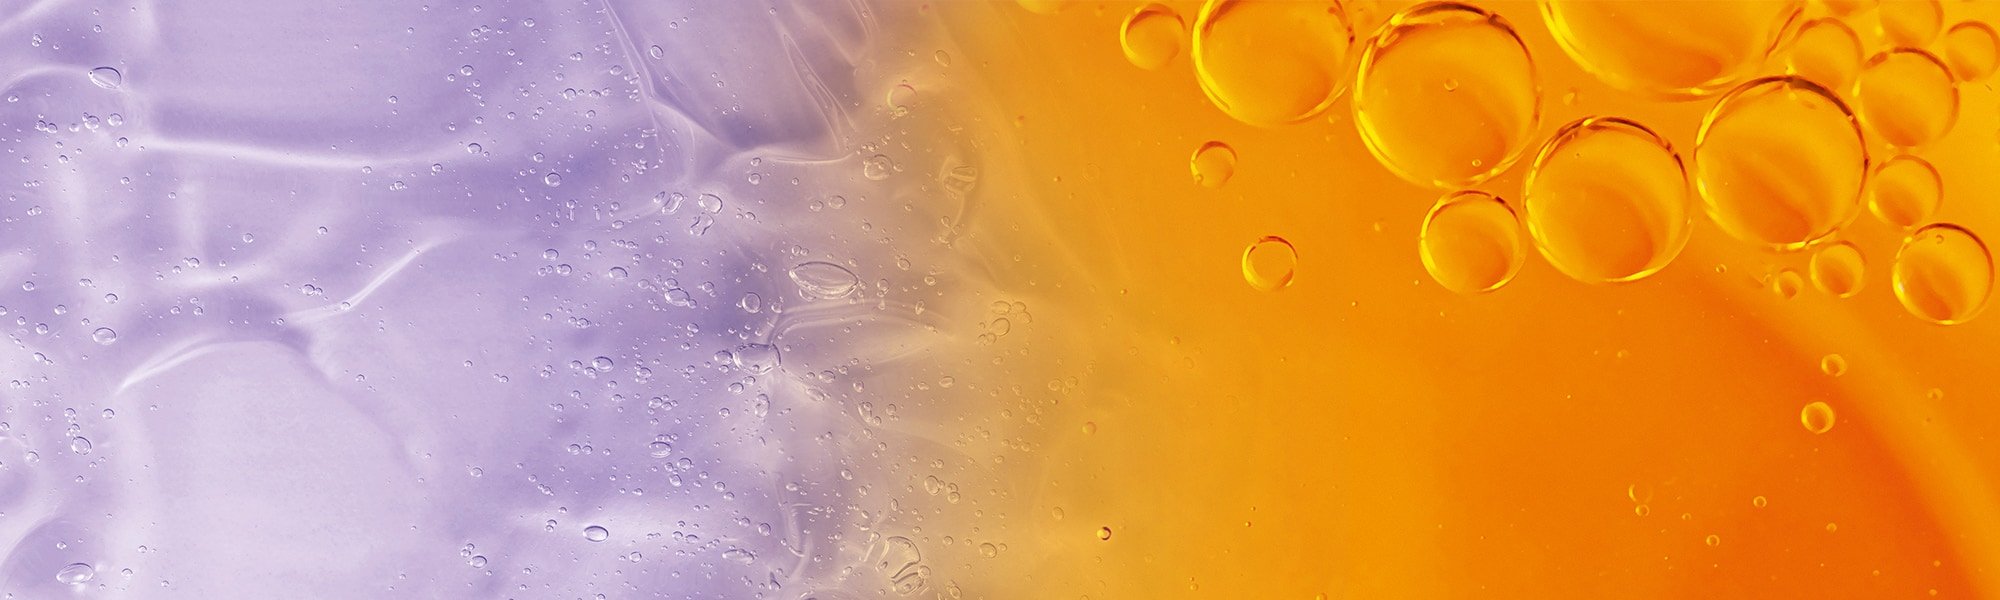 Flüssigkeitstropfen vor violettem und orangenem Hintergrund